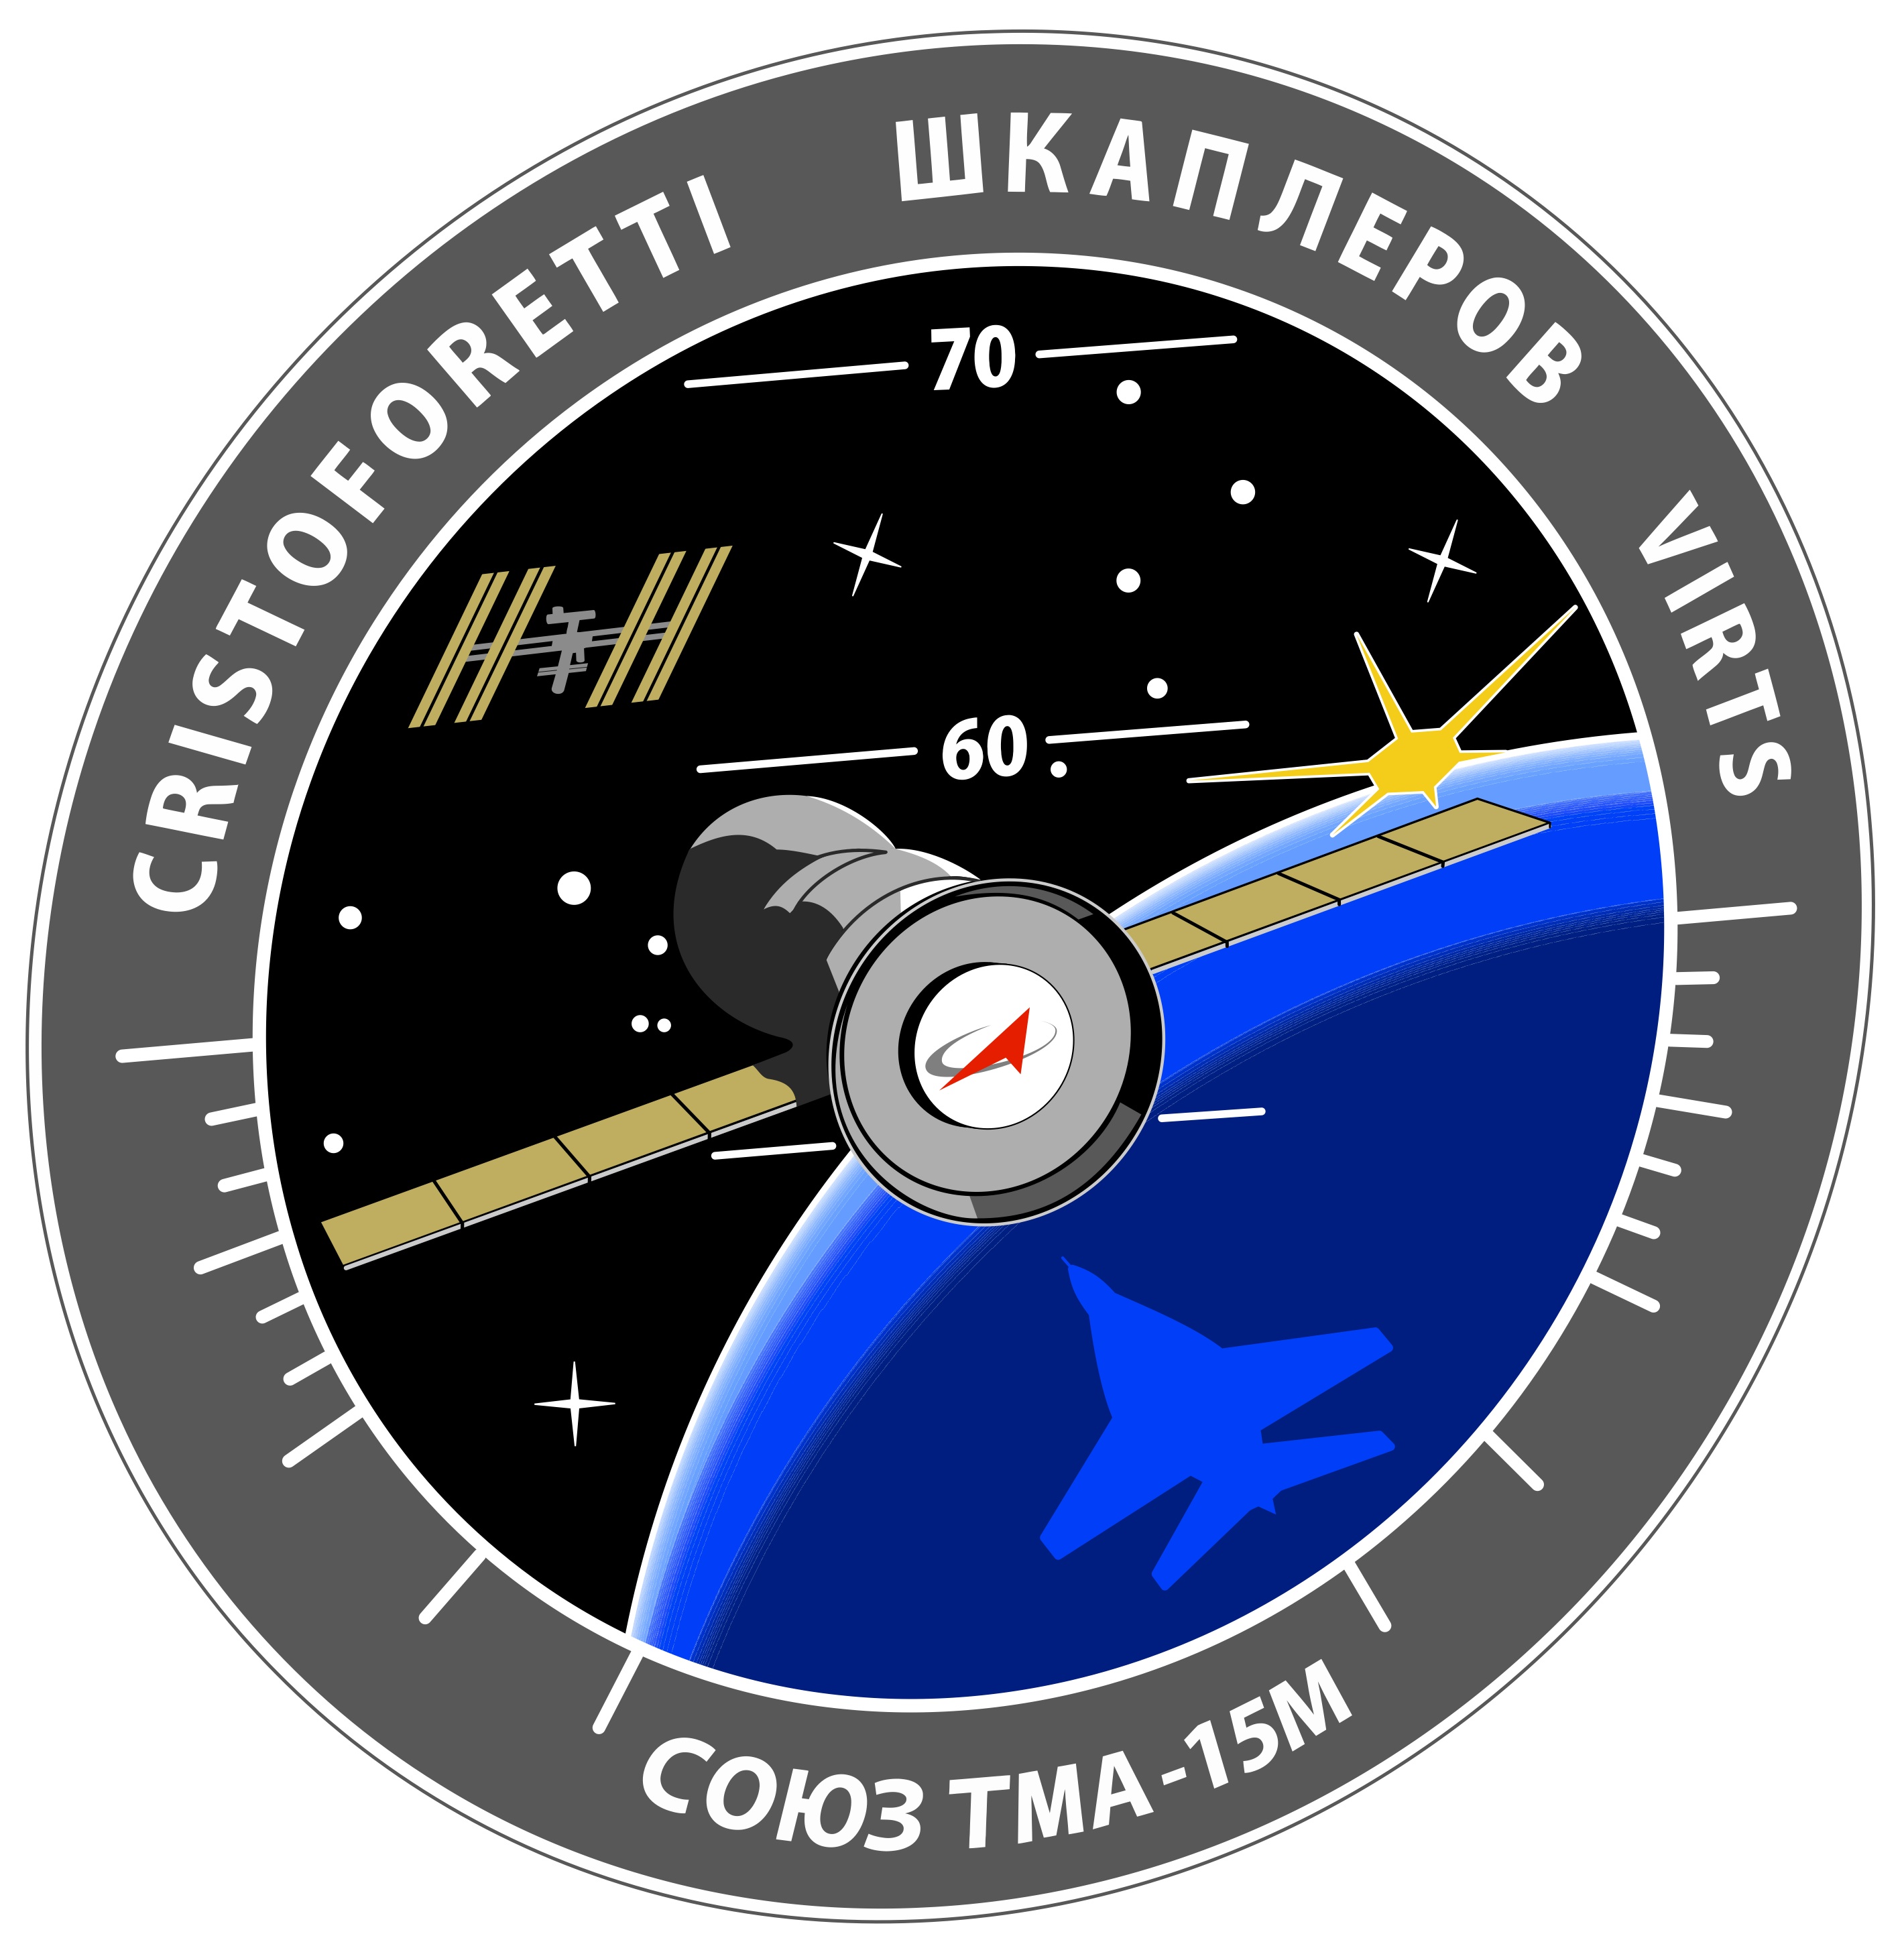 La patch di missione della Soyuz TMA-15M. Credit: Roscosmos/Spacepatches.nl